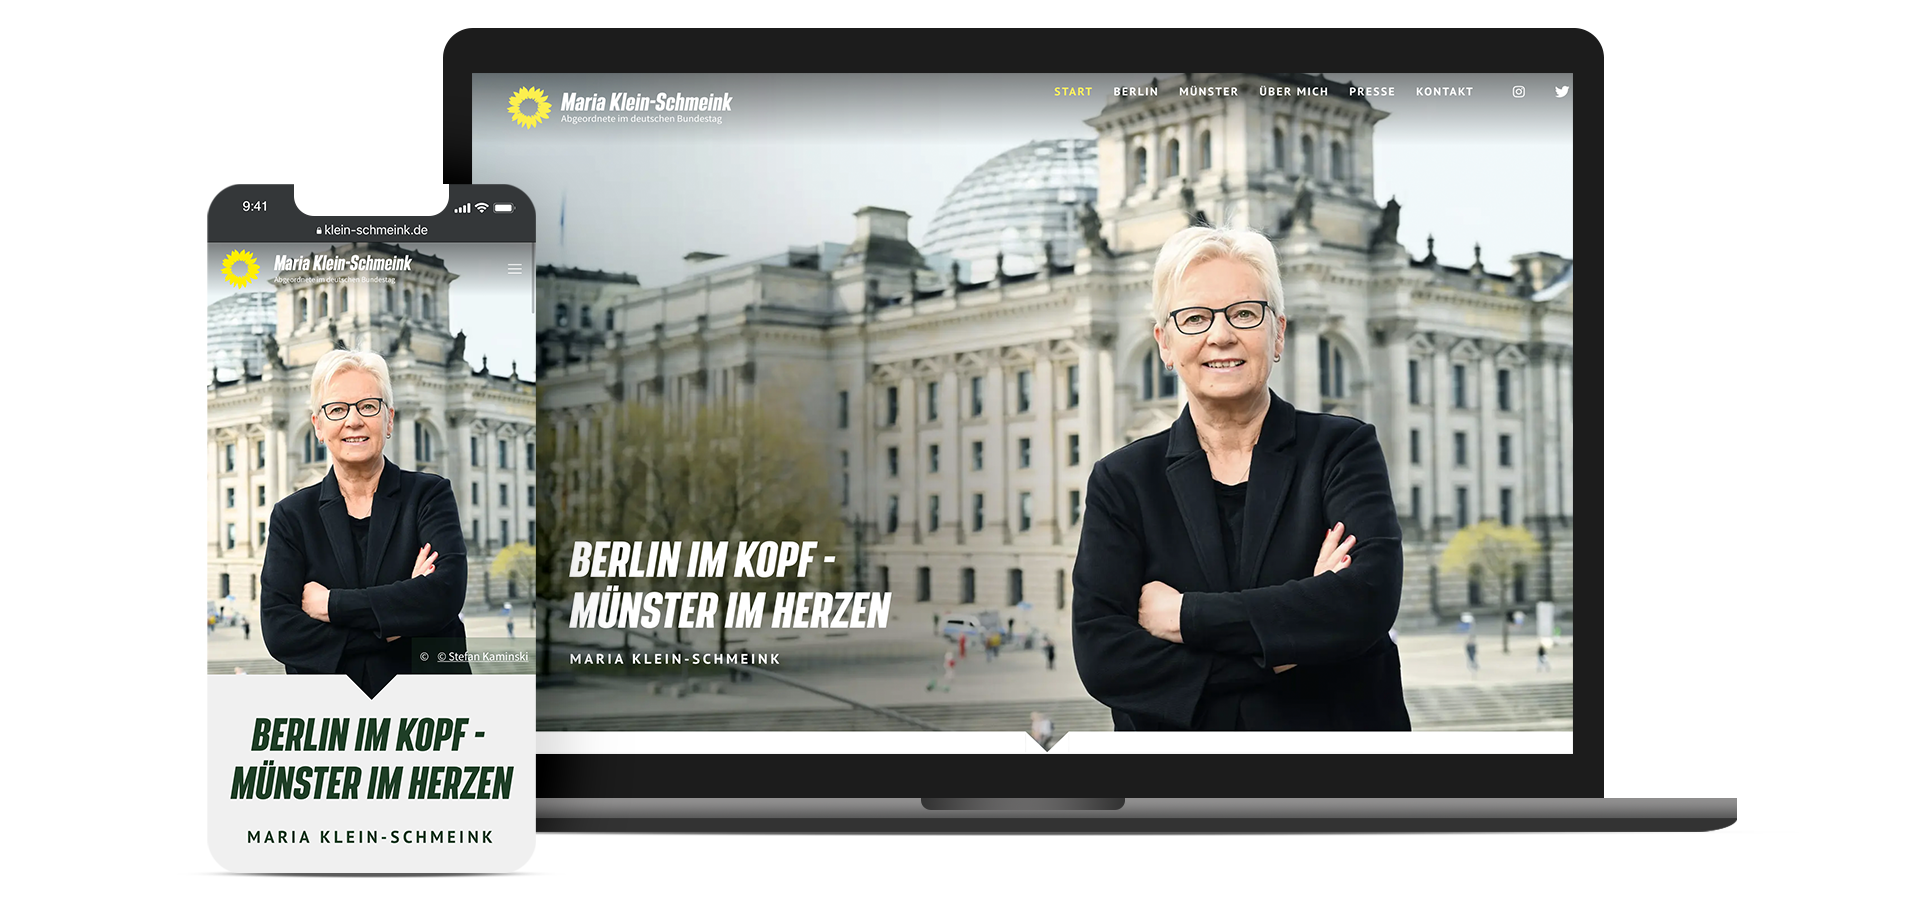 Mobile- und Desktopscreens von der Startseite von Maria Klein-Schmeink.